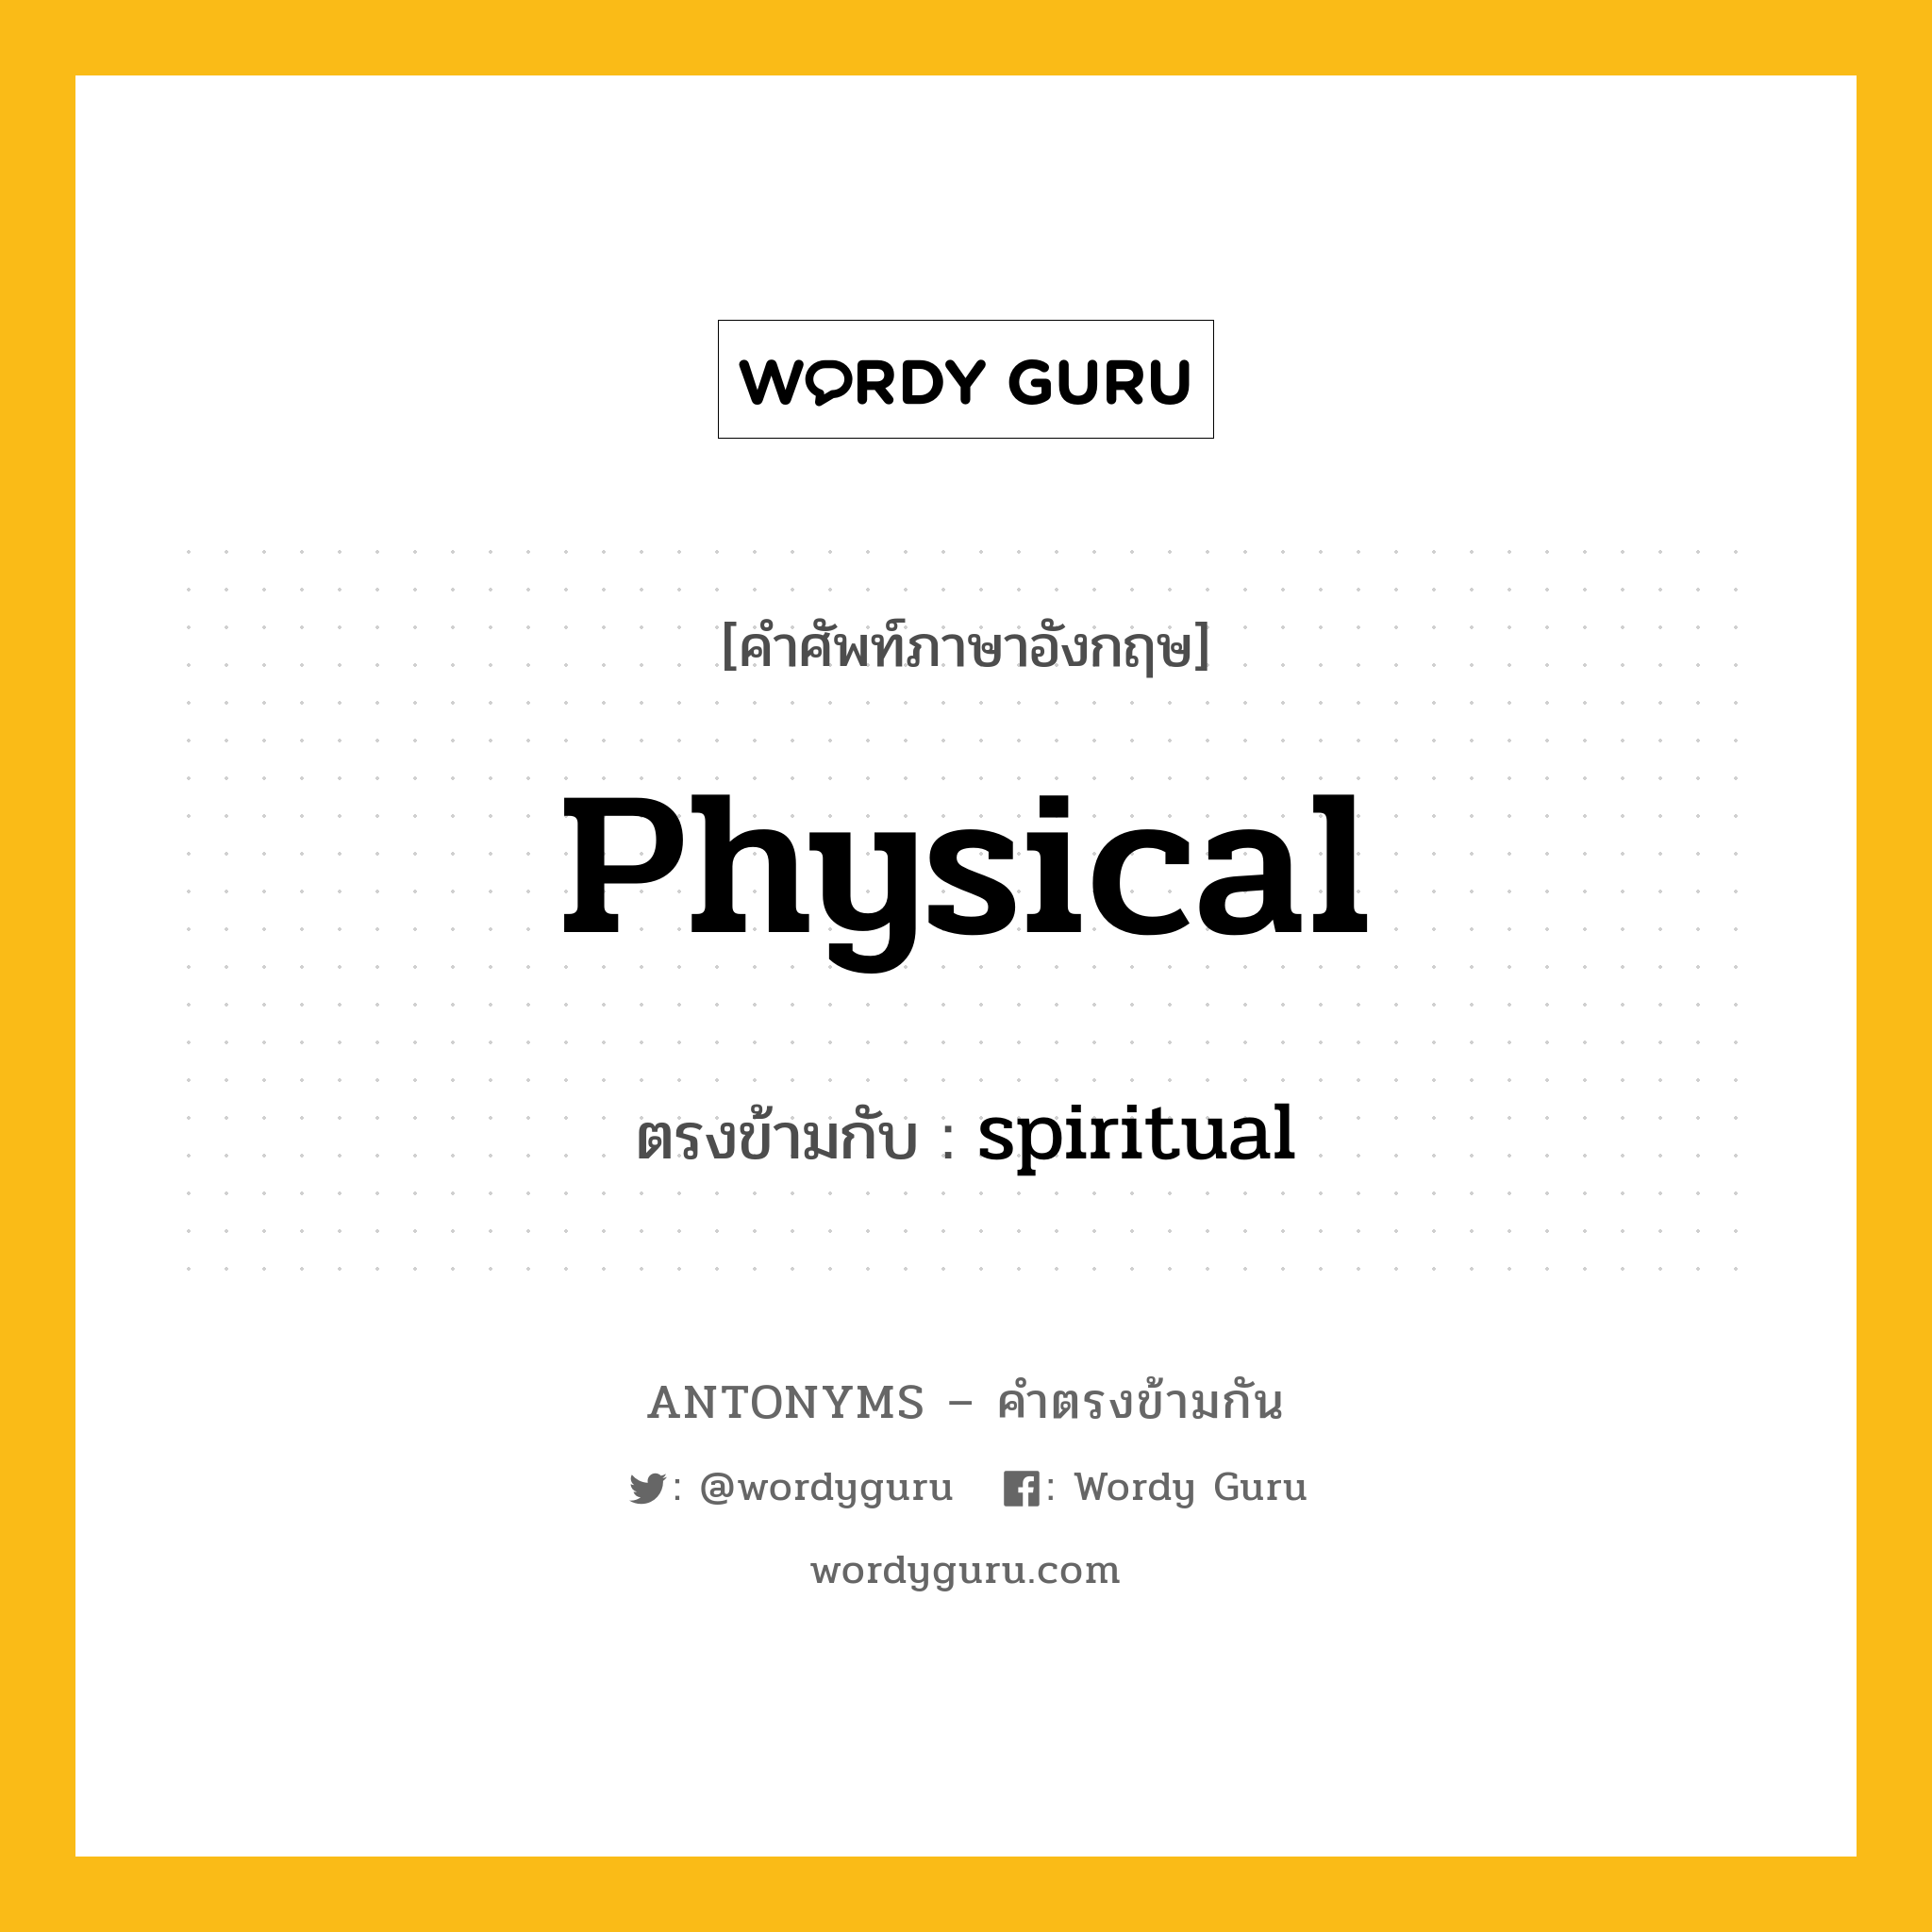 physical เป็นคำตรงข้ามกับคำไหนบ้าง?, คำศัพท์ภาษาอังกฤษ physical ตรงข้ามกับ spiritual หมวด spiritual